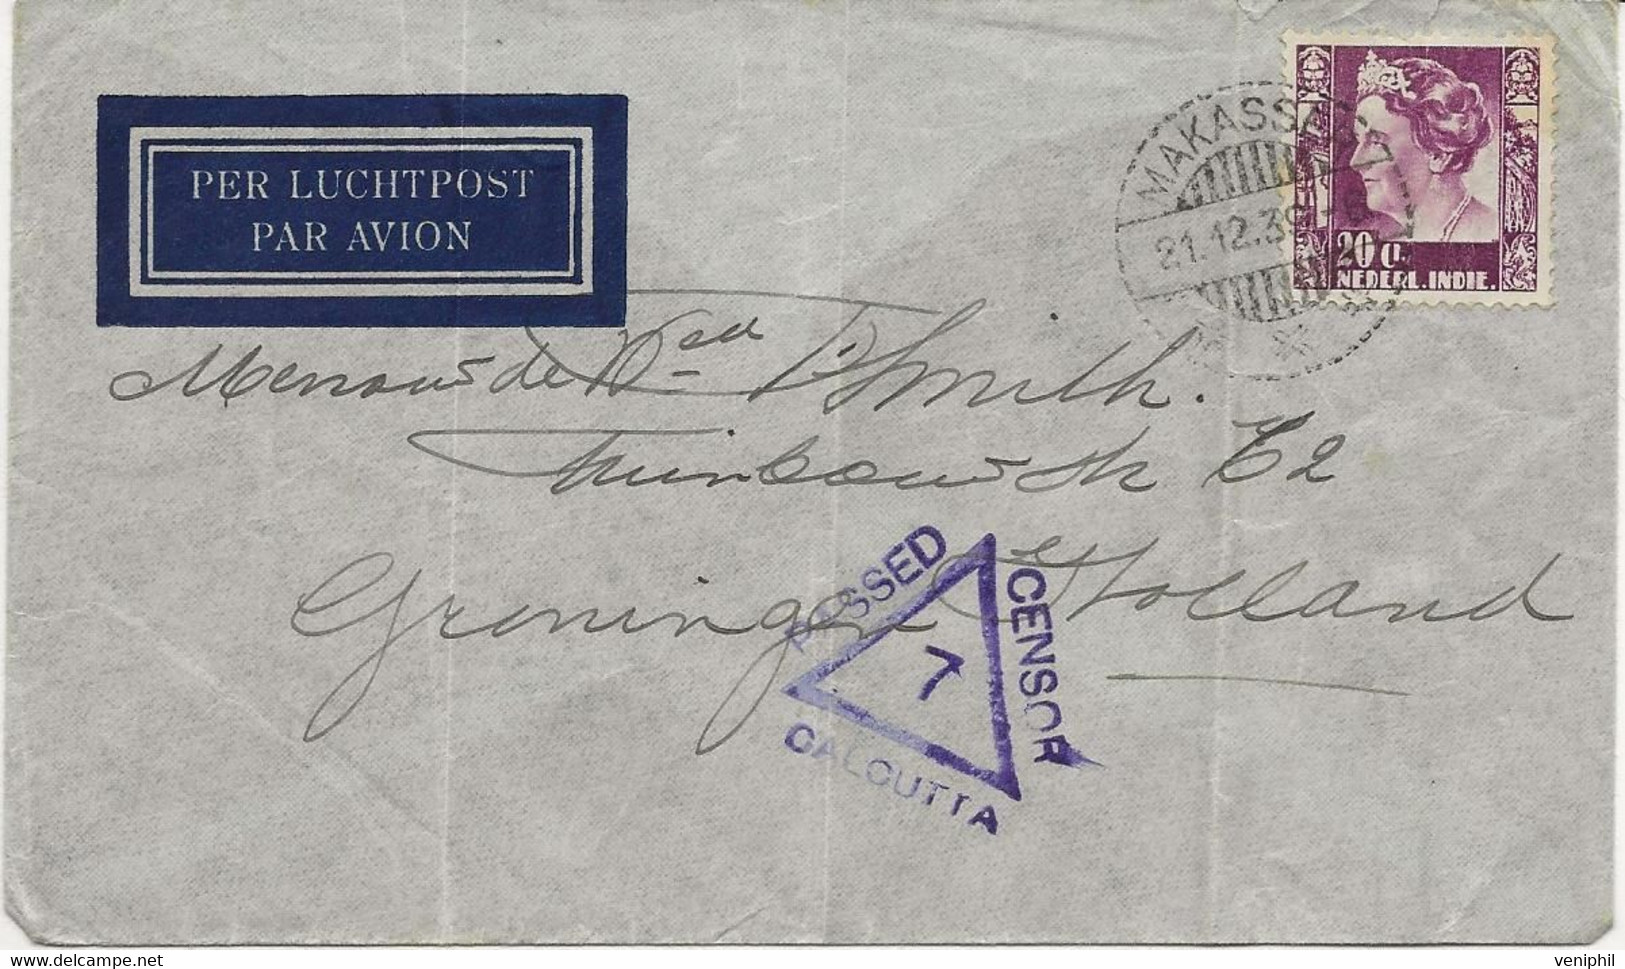 INDE NEERLANDAISE -  LETTRE AFFRANCHIE N° 189 - ANNEE 1939 + CACHET CENSURE CALCUTTA - Netherlands Indies